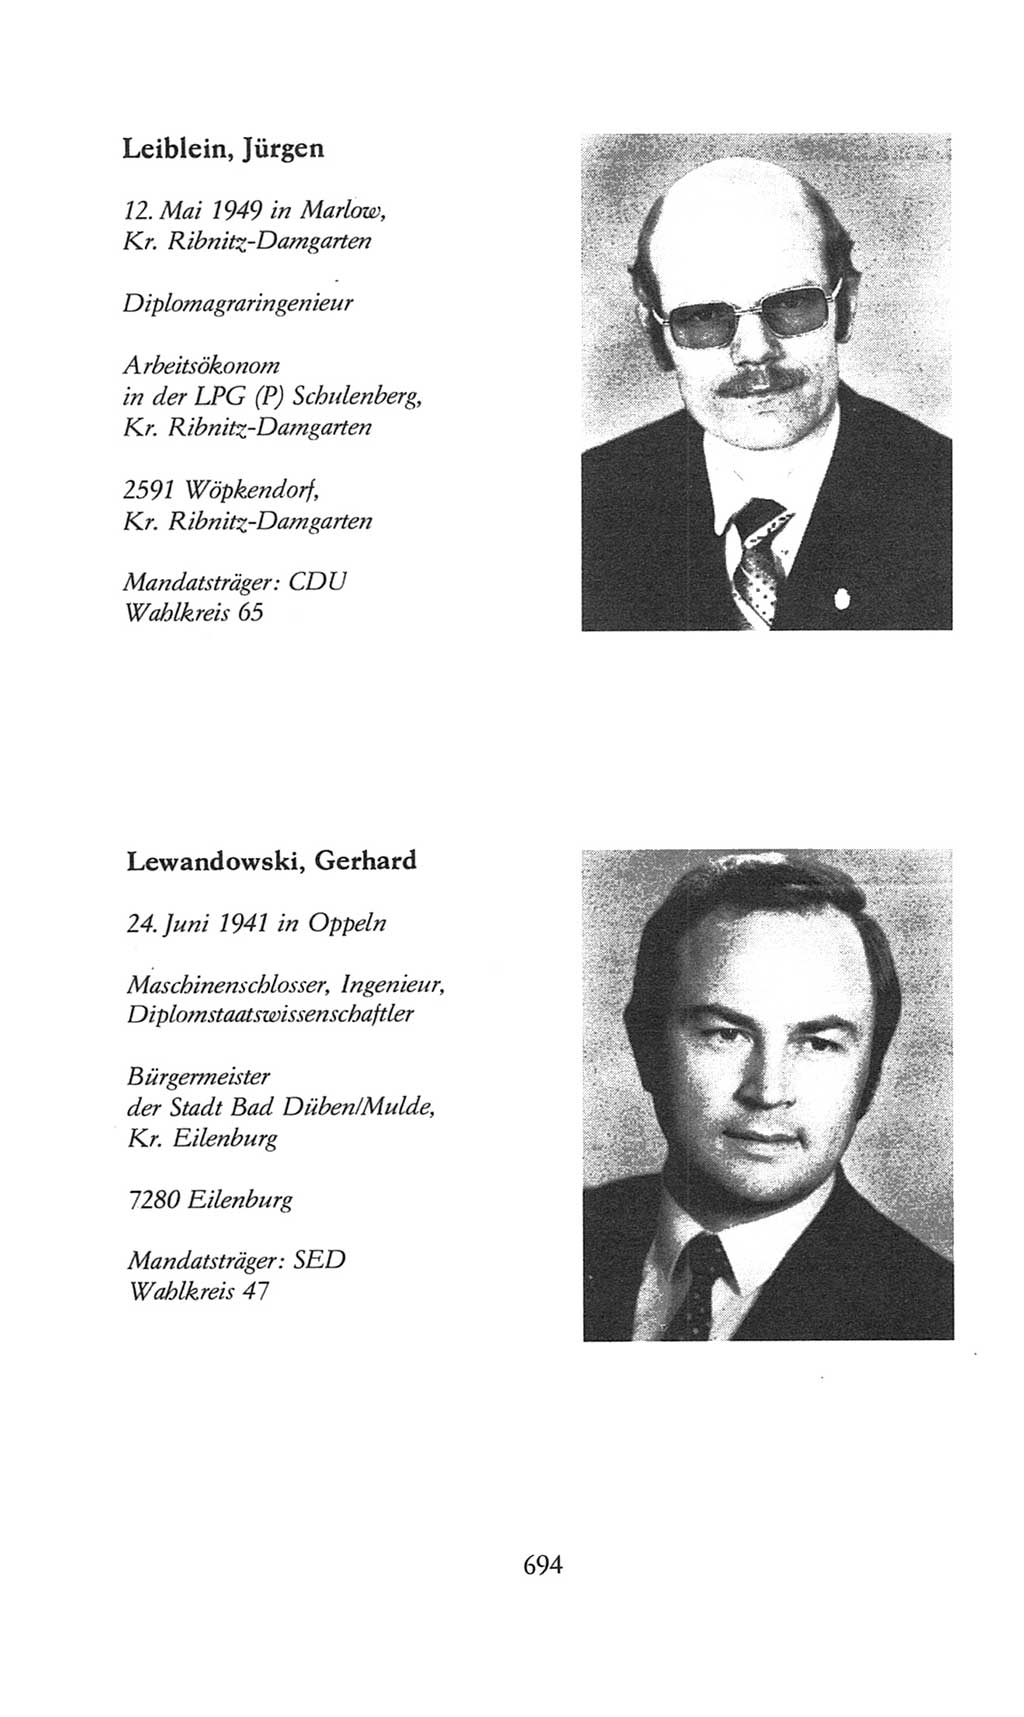 Volkskammer (VK) der Deutschen Demokratischen Republik (DDR), 8. Wahlperiode 1981-1986, Seite 694 (VK. DDR 8. WP. 1981-1986, S. 694)